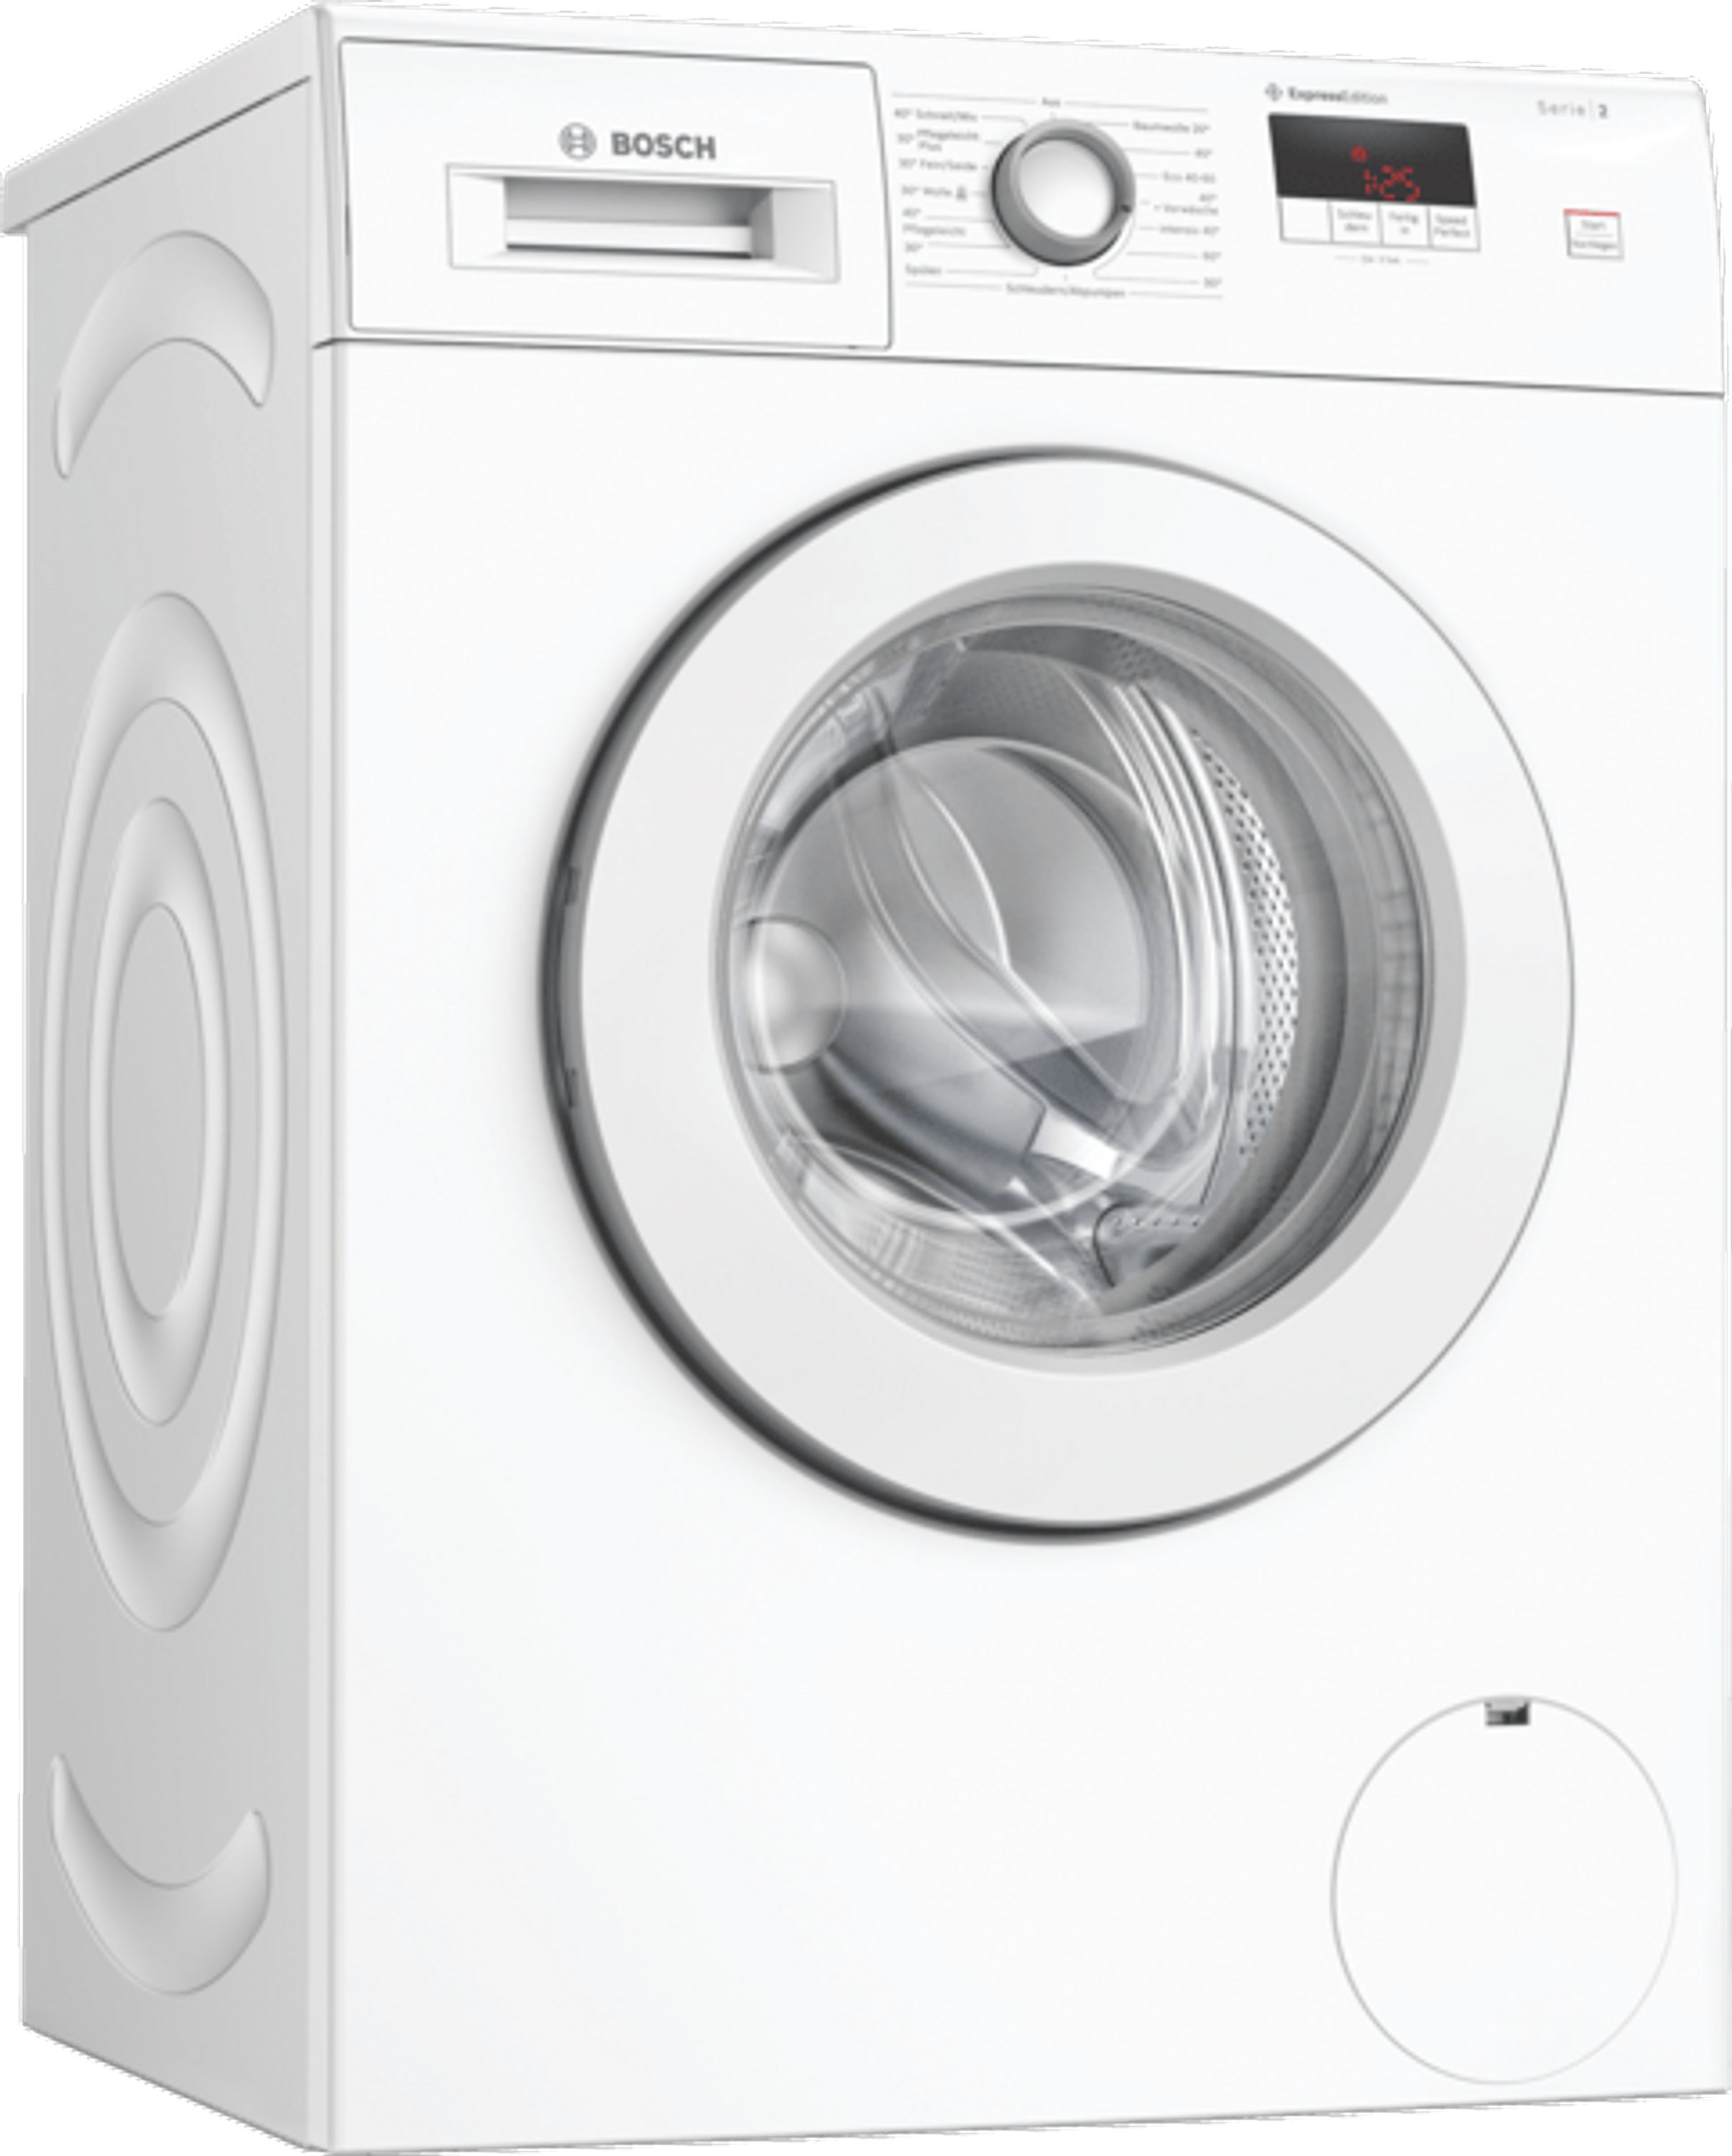 BOSCH Einbauwaschmaschine WAJ280H6, 7 kg, 1400 U/min online kaufen | OTTO